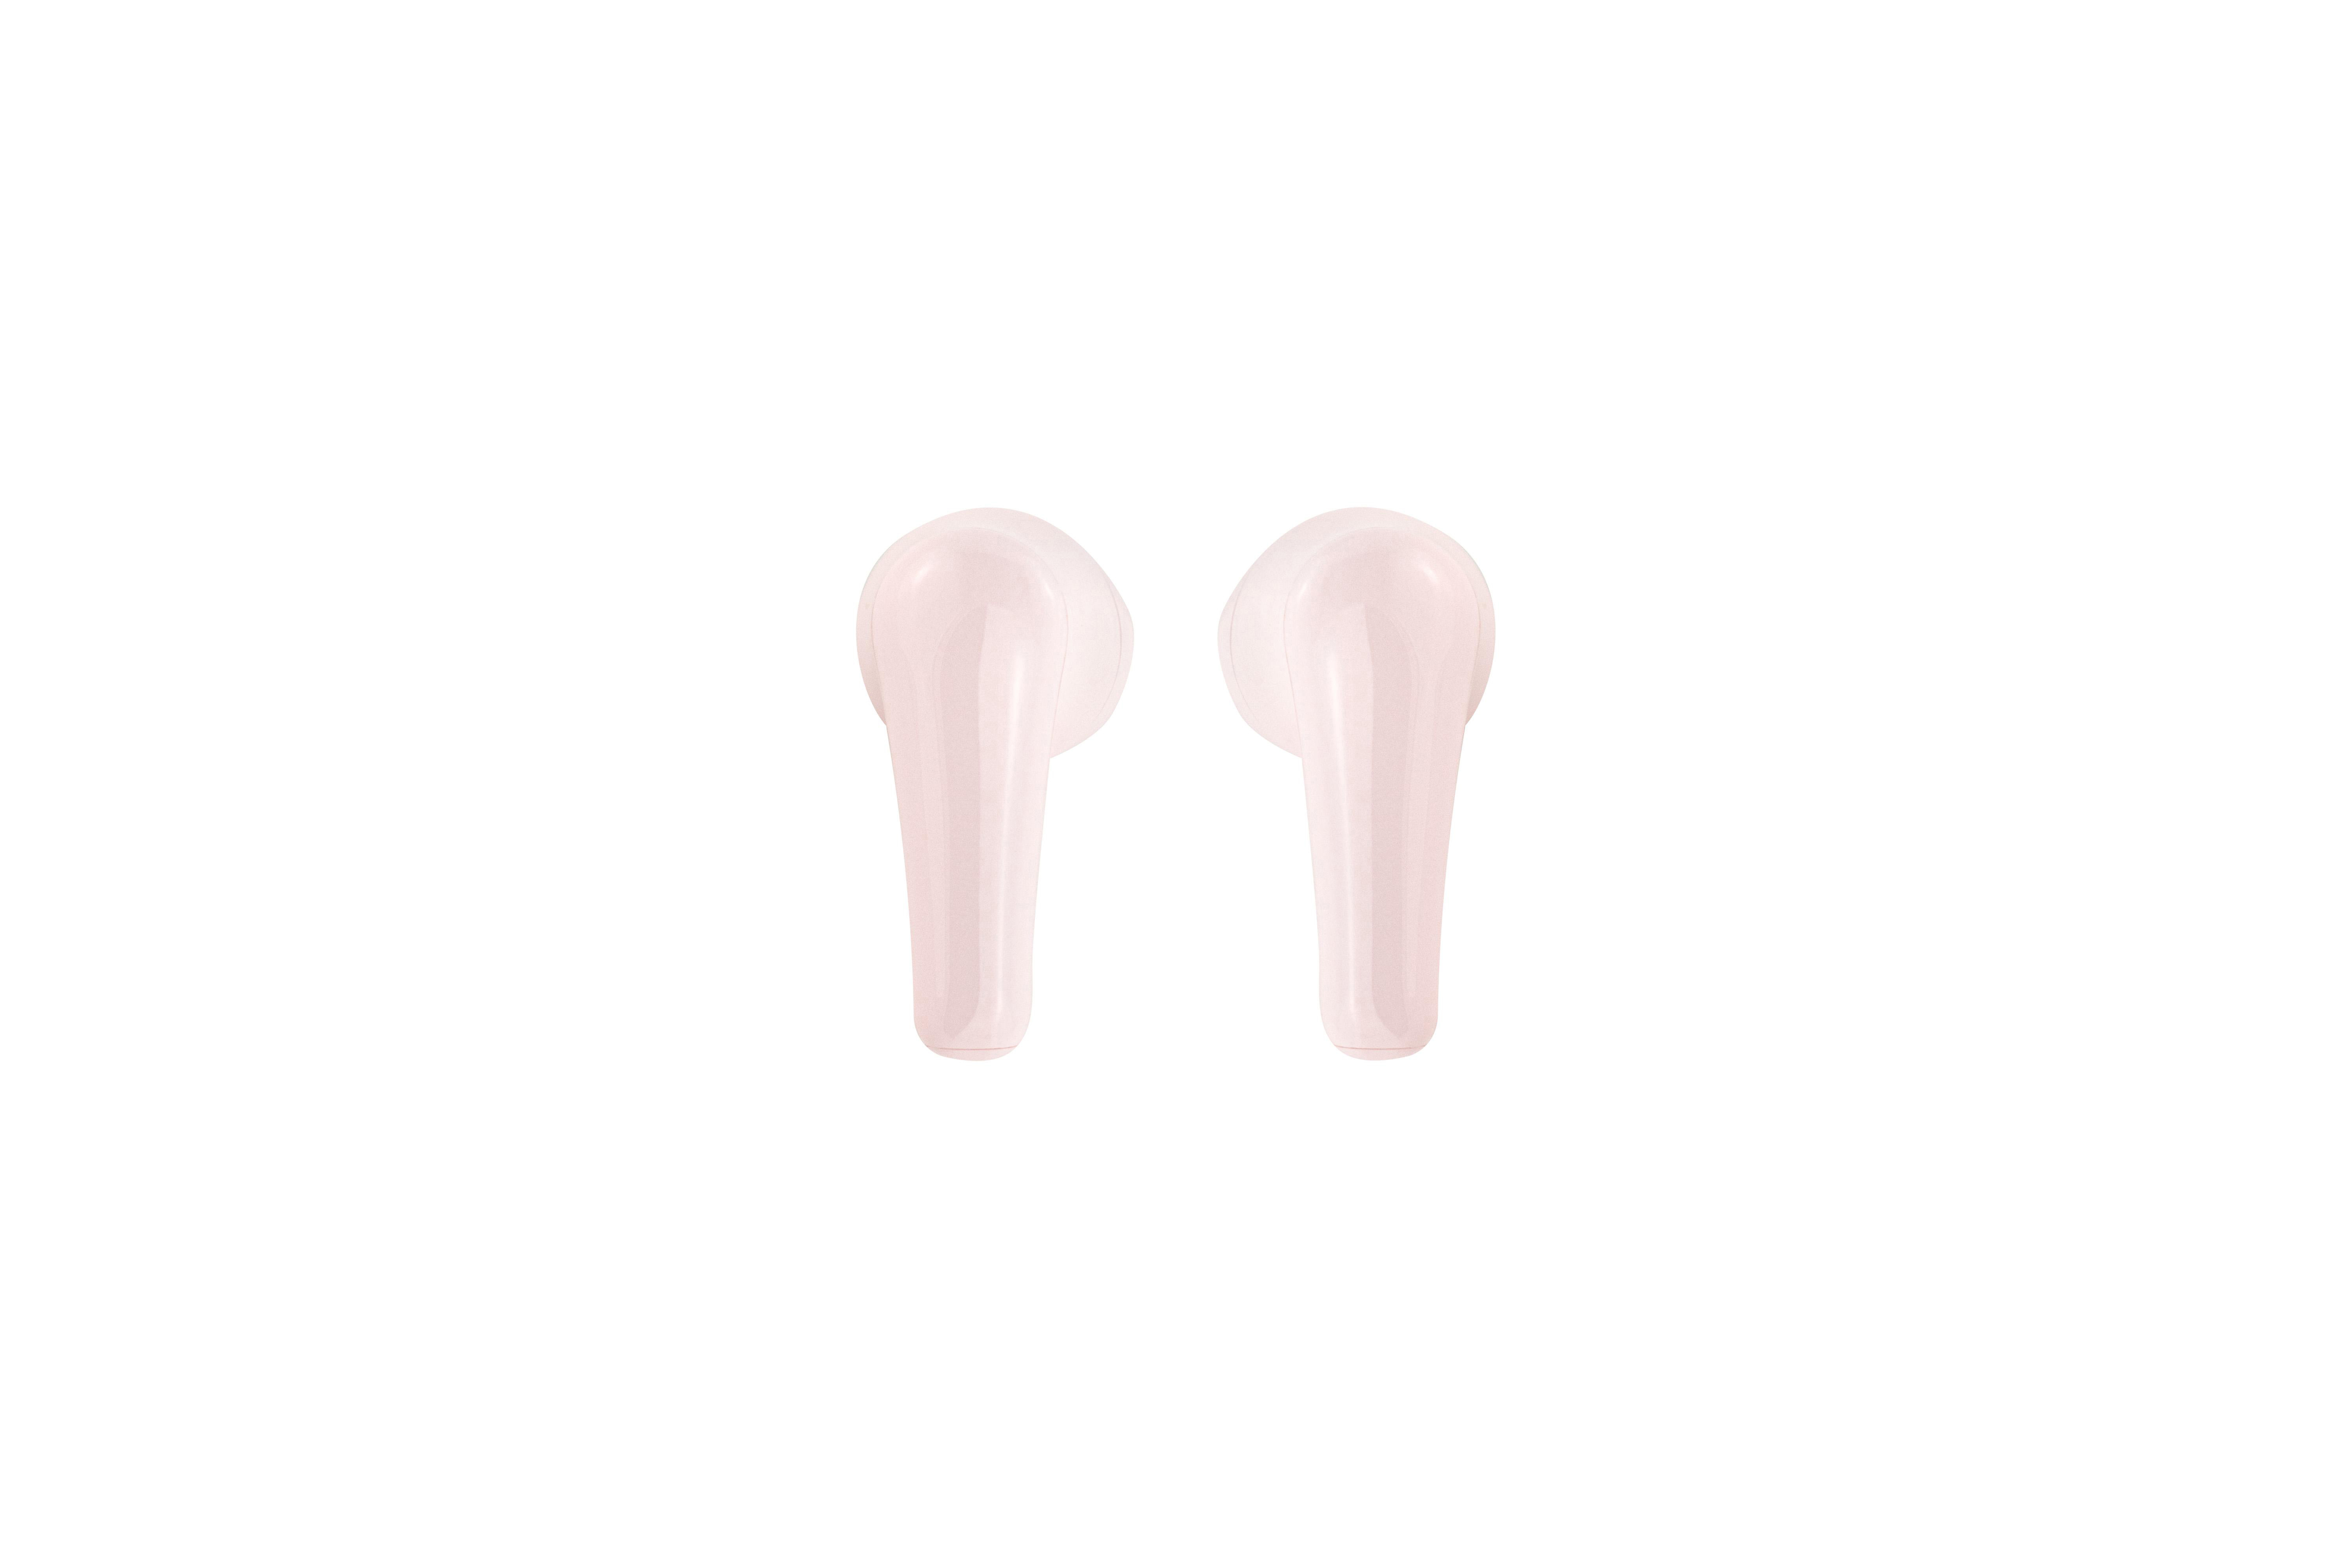 VIETA True Wireless, In-ear Pink Kopfhörer Bluetooth Feel